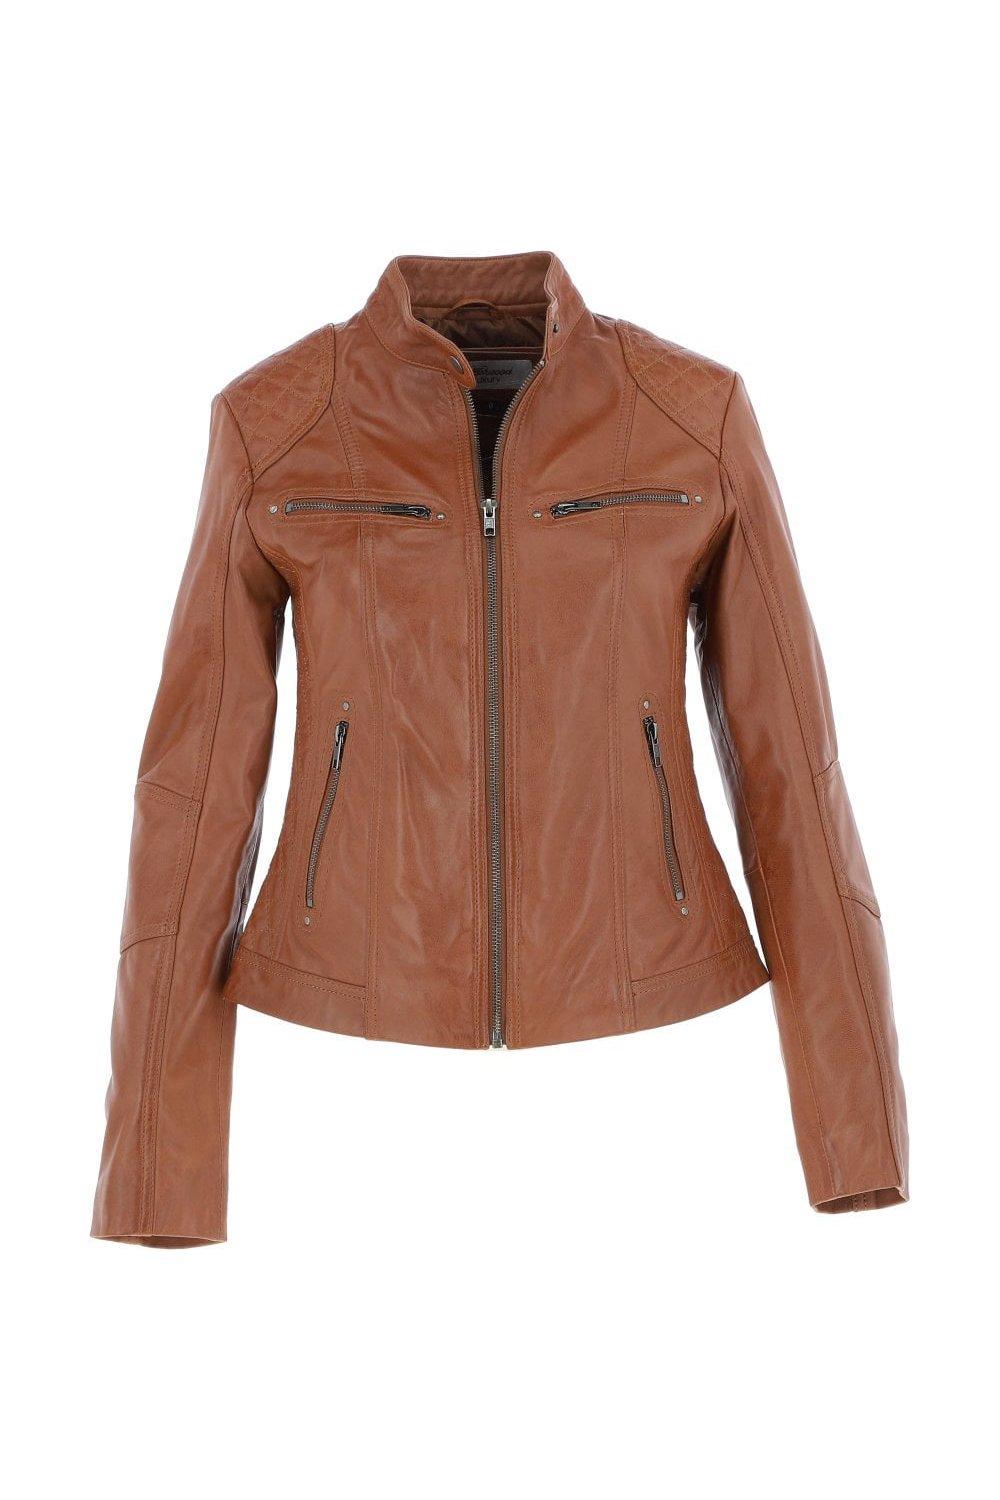 Модная куртка в байкерском стиле из натуральной кожи Donna Milano Ashwood Leather, коричневый leather jacket ad milano куртки из натуральной кожи узкого покроя